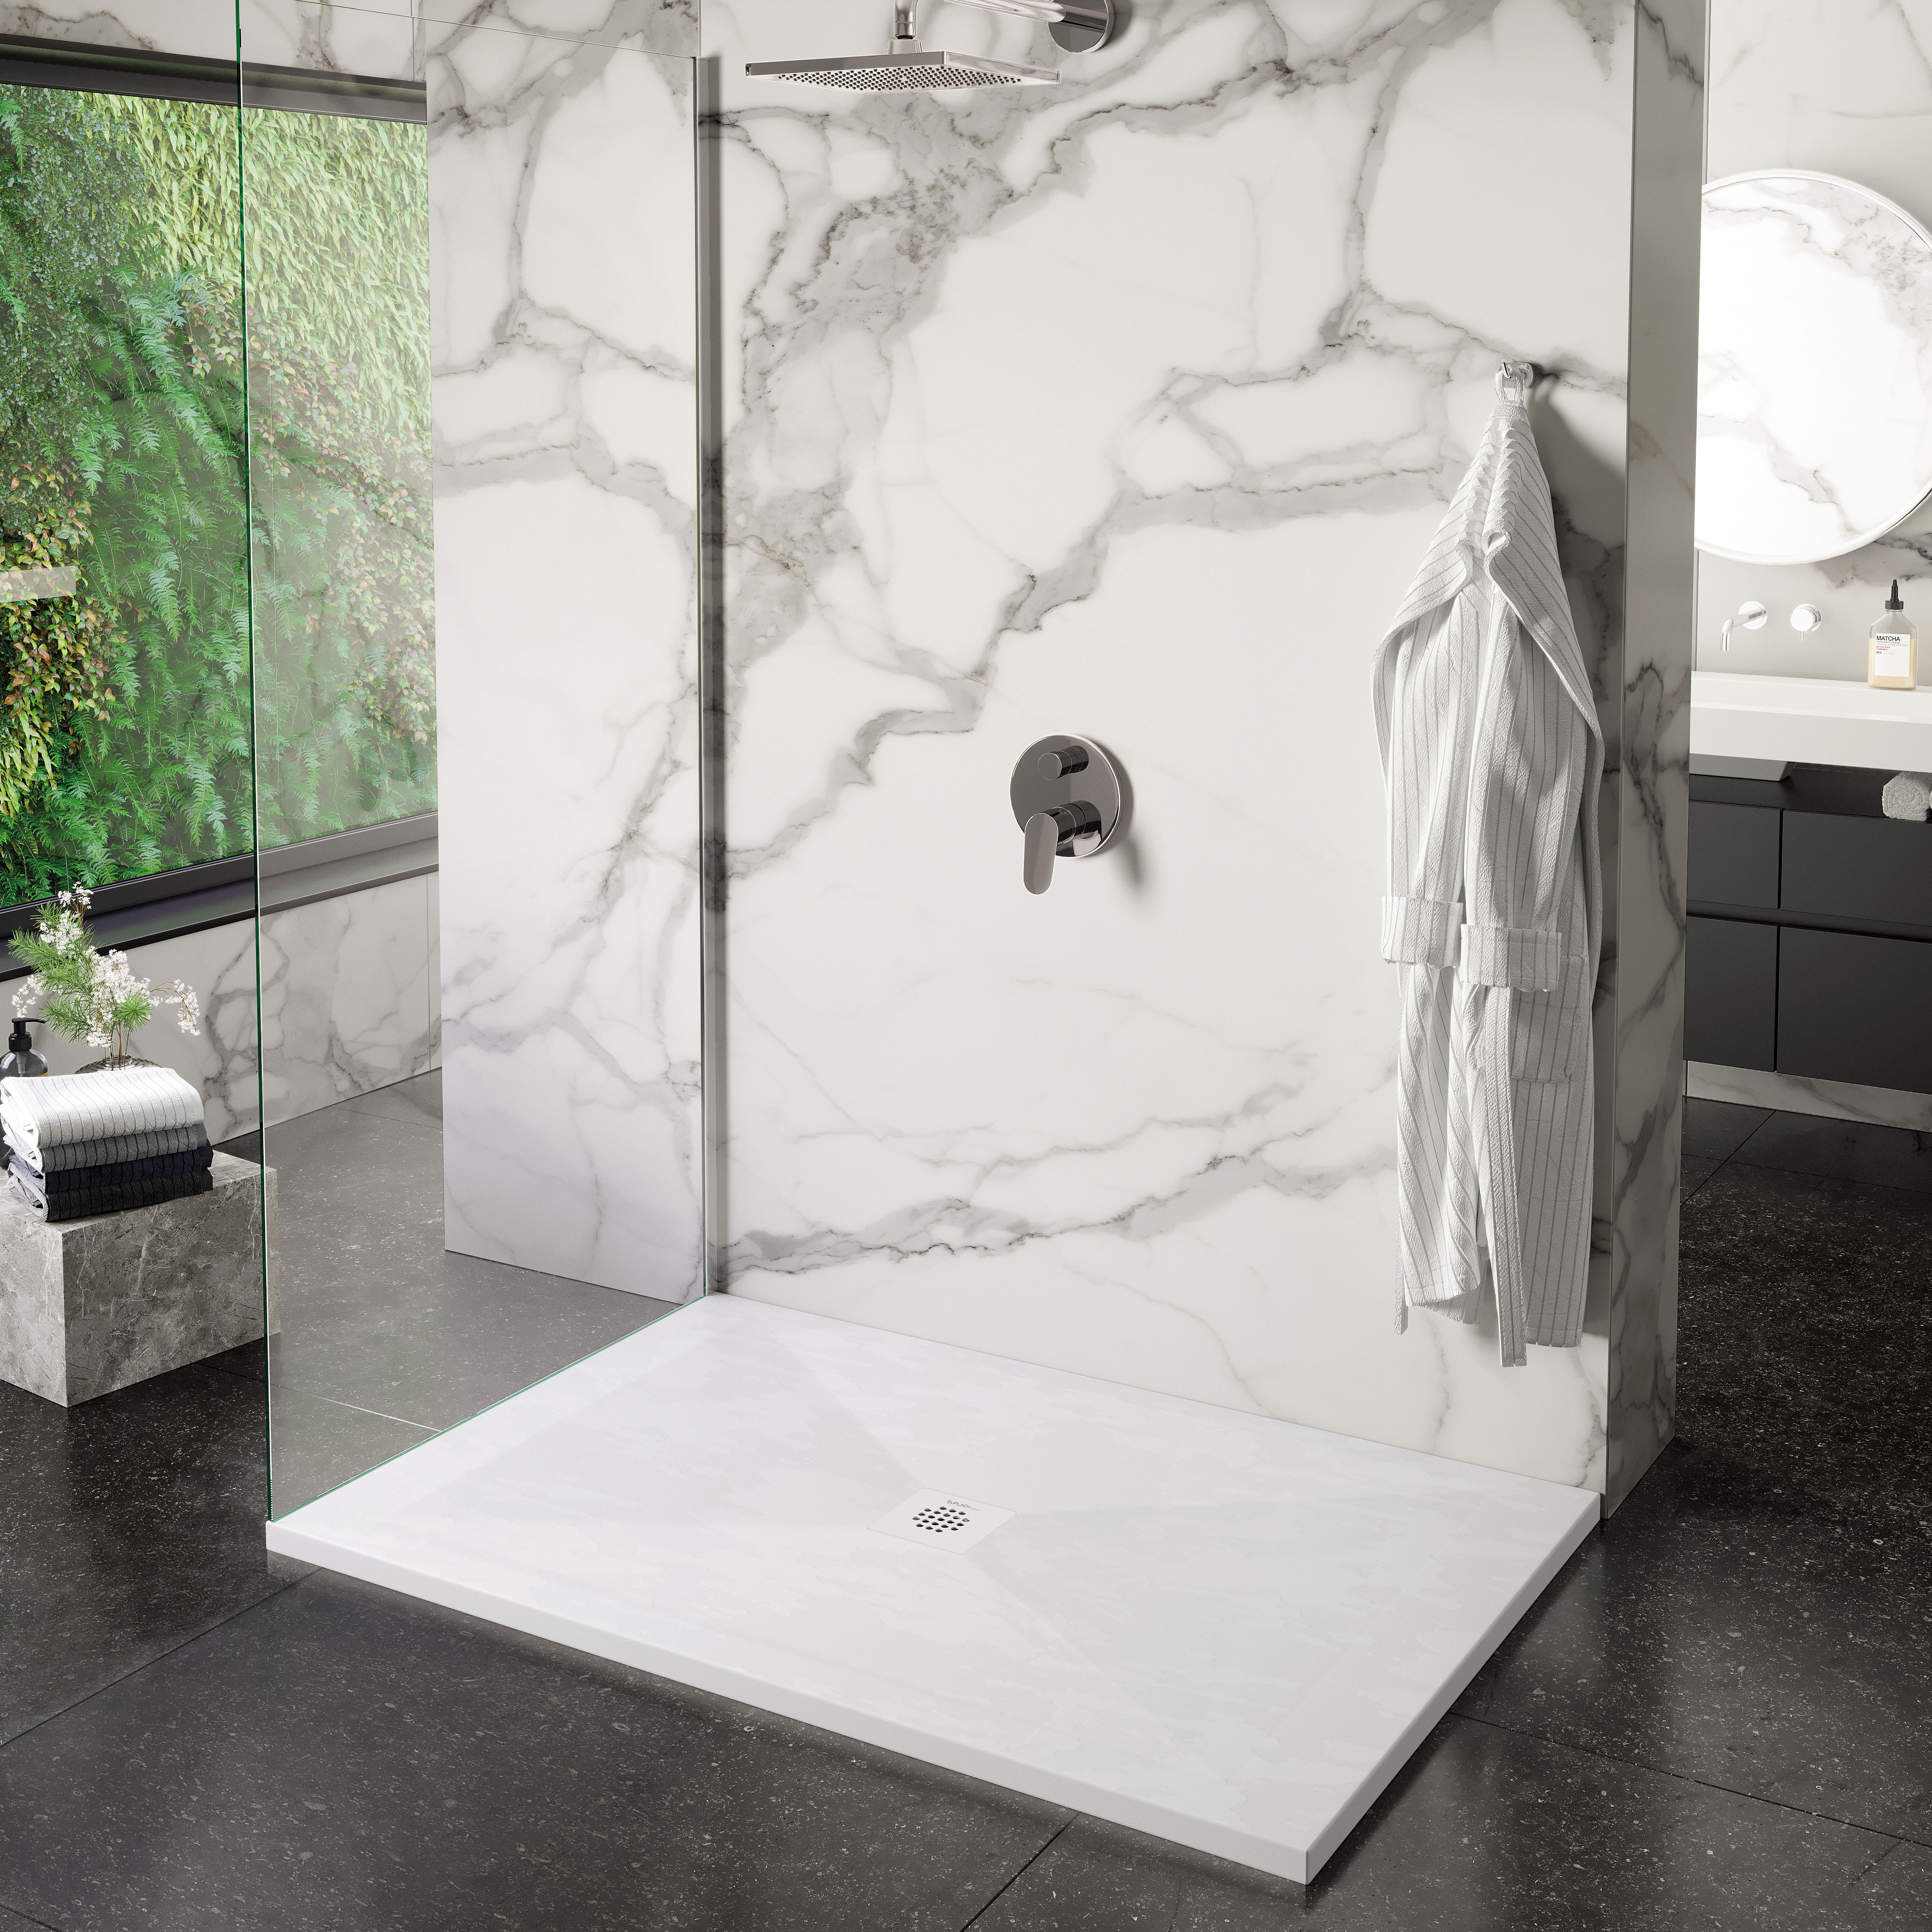 Plato de ducha 160x70 en resina blanca o gris de diseño moderno